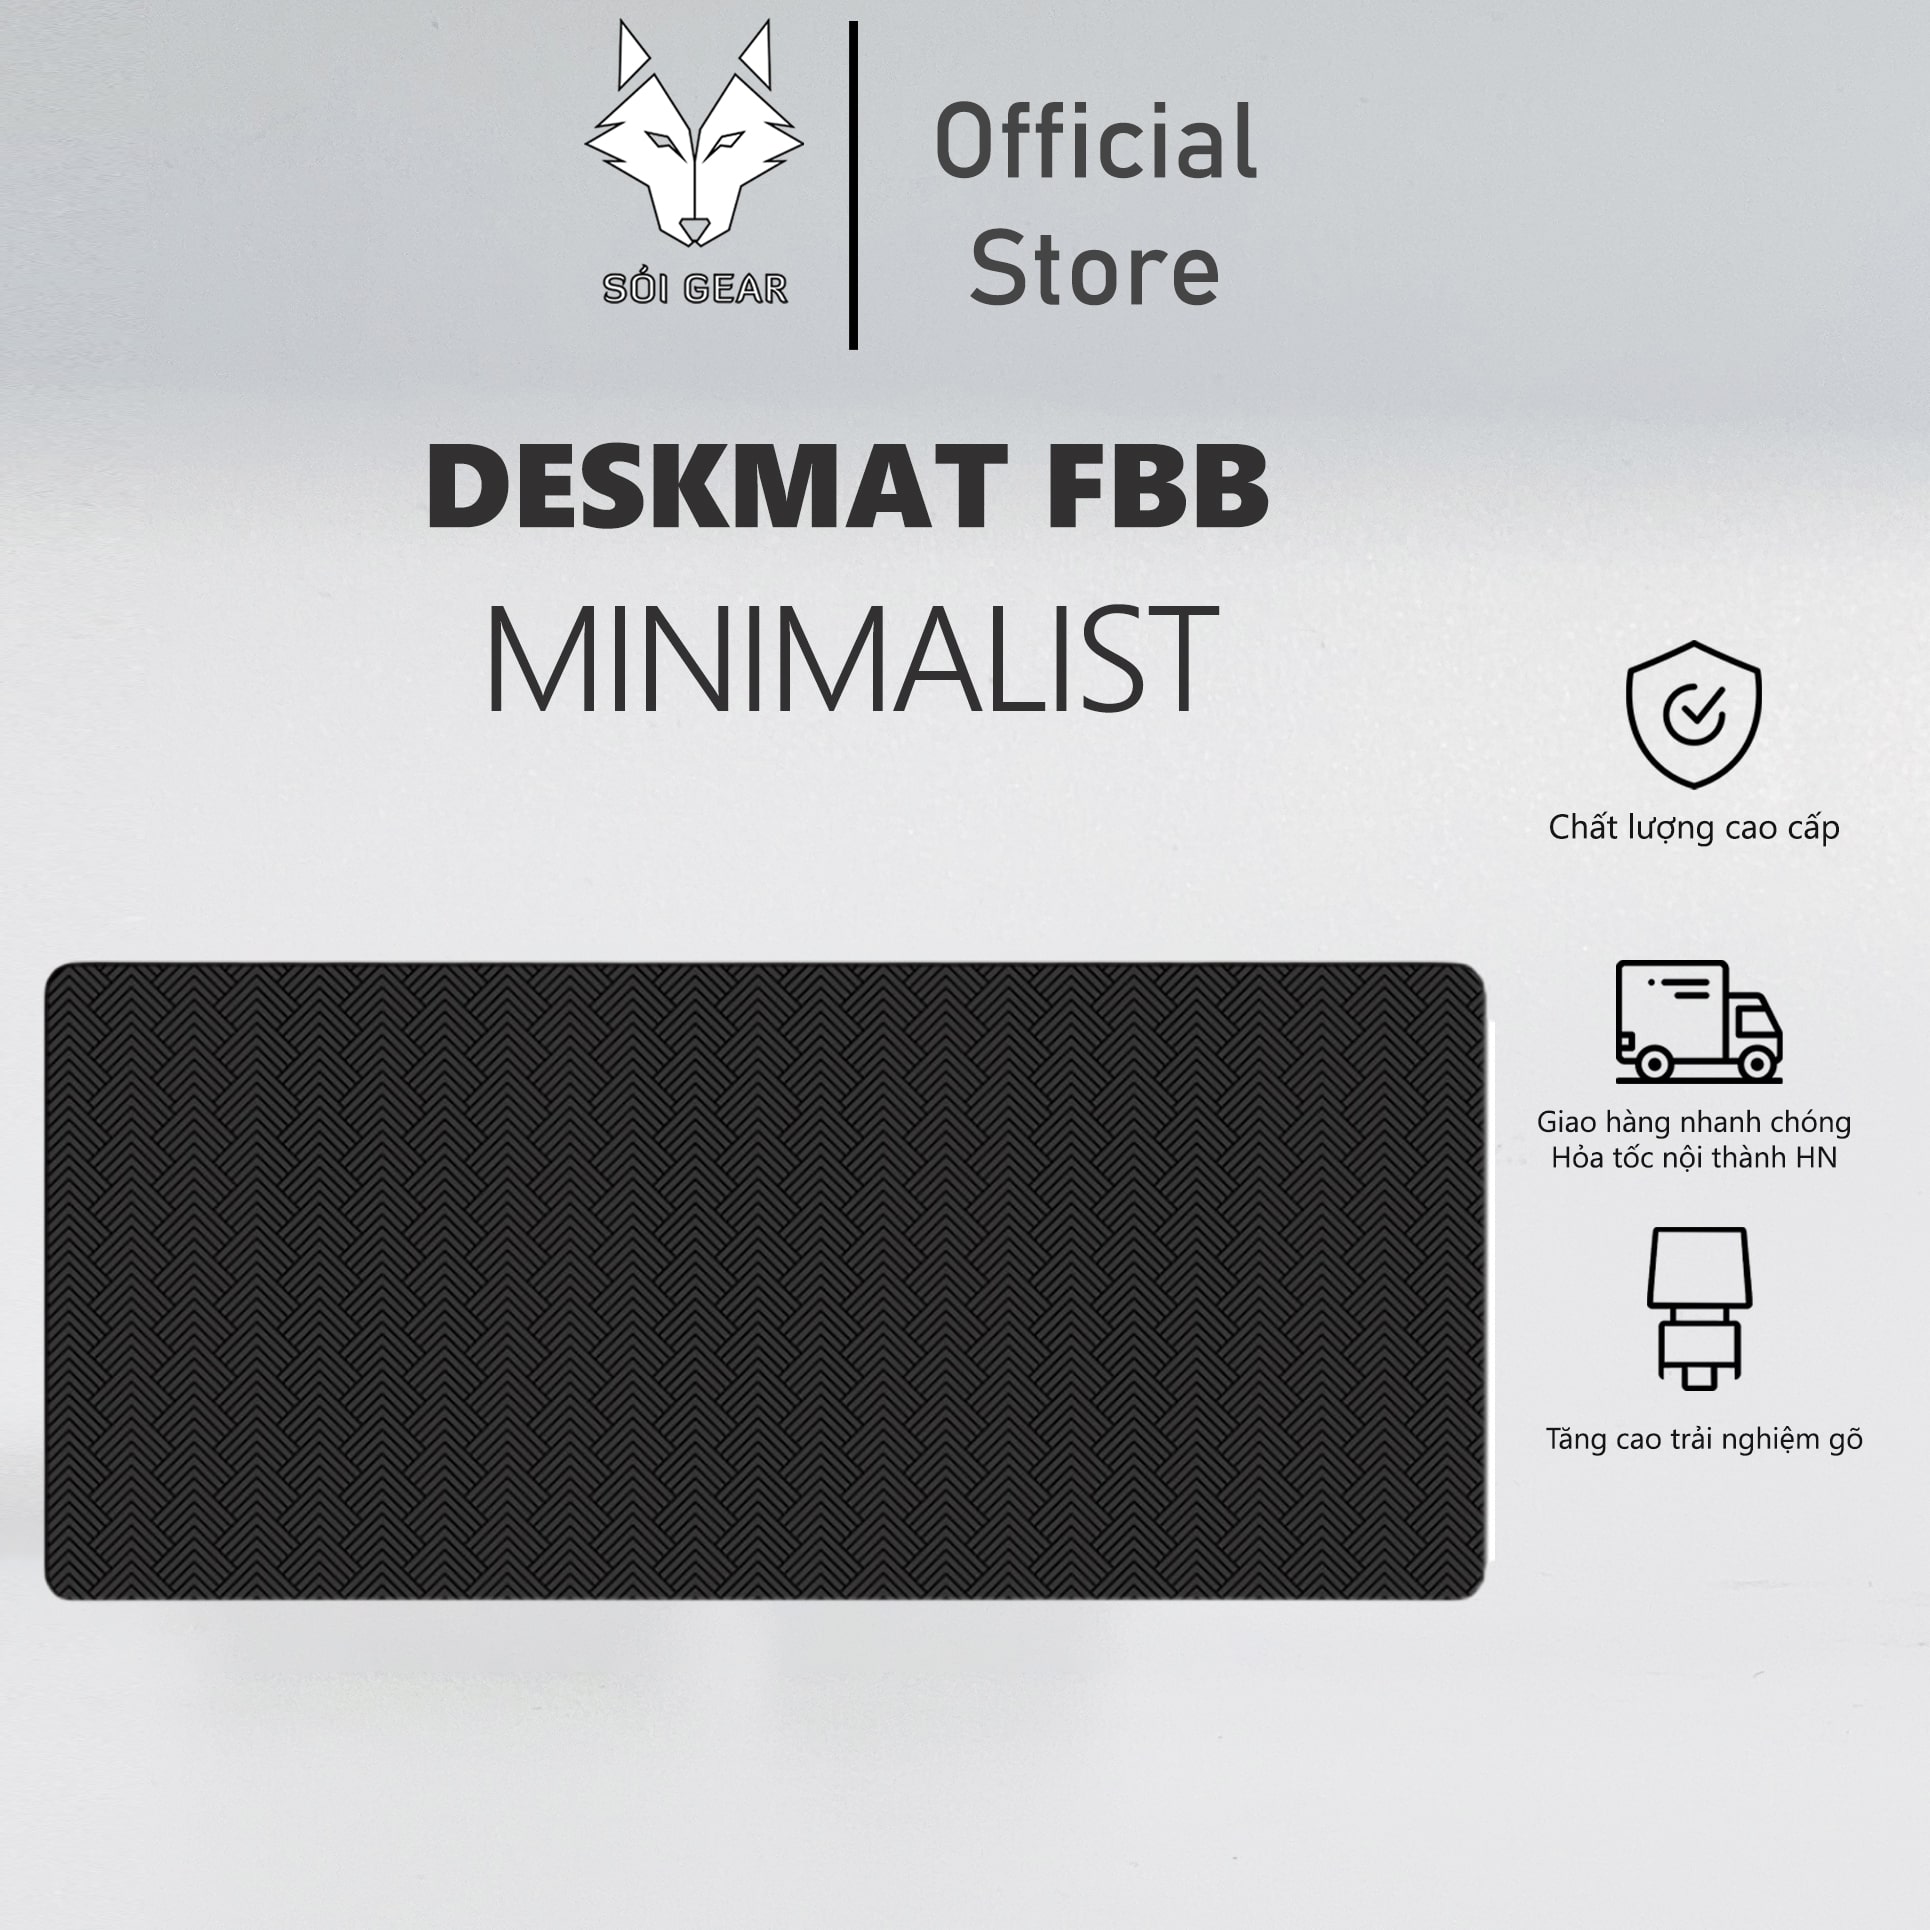 Deskmat FBB Minimalist